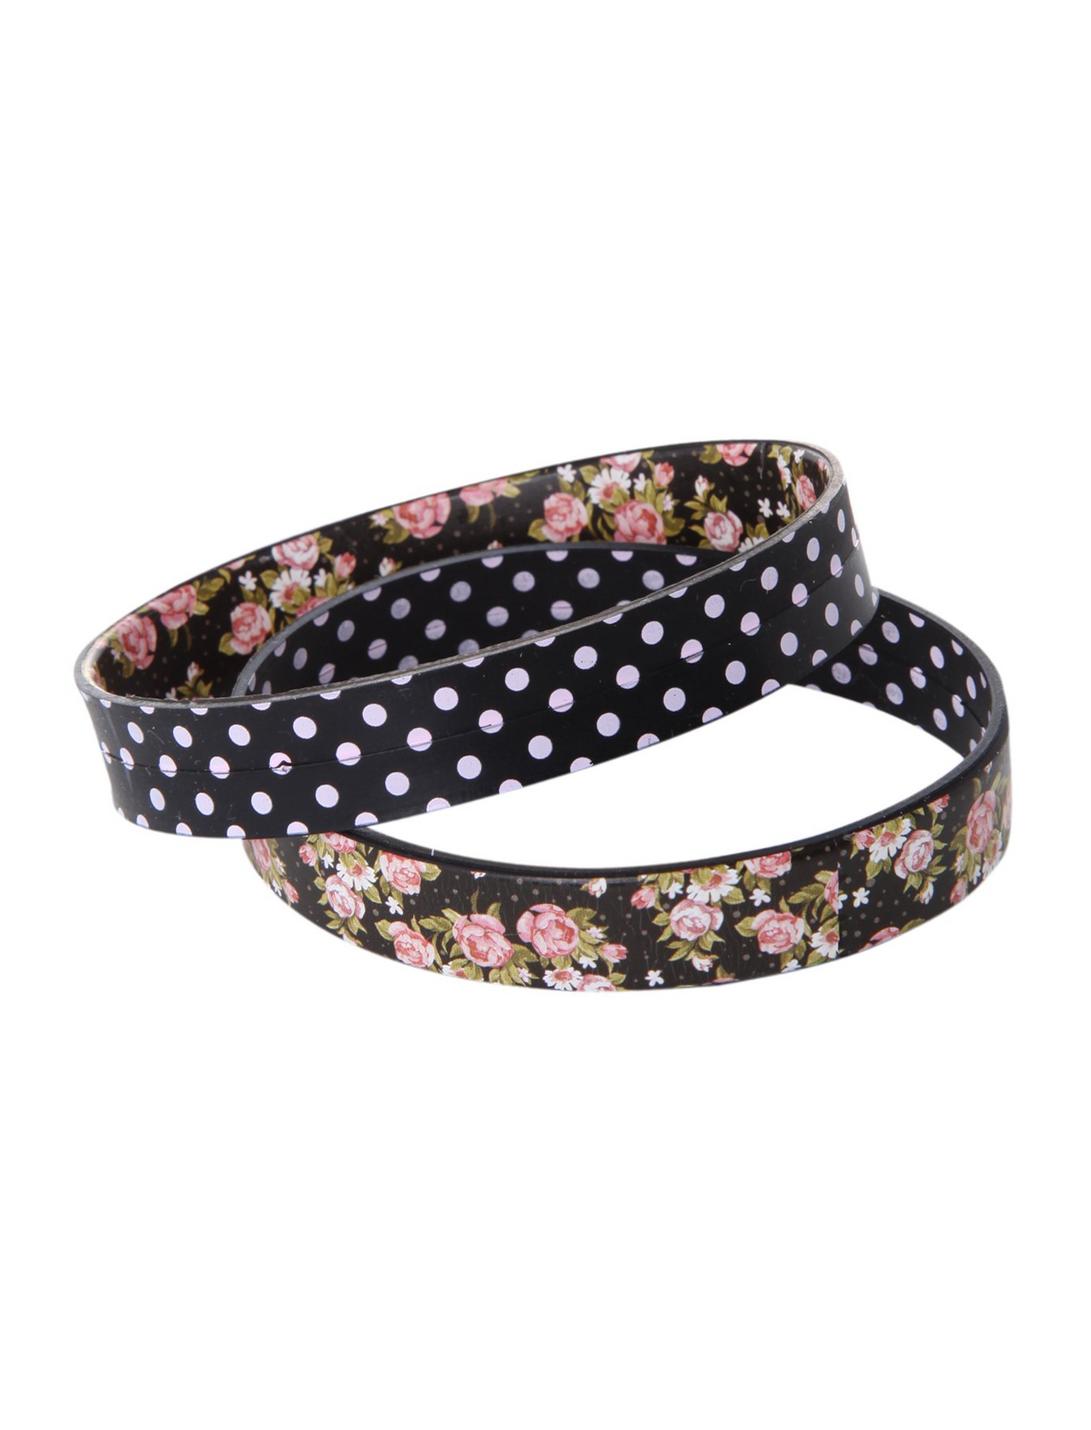 Pink Black Floral Polka Dot Rubber Bracelet 2 Pack, , hi-res